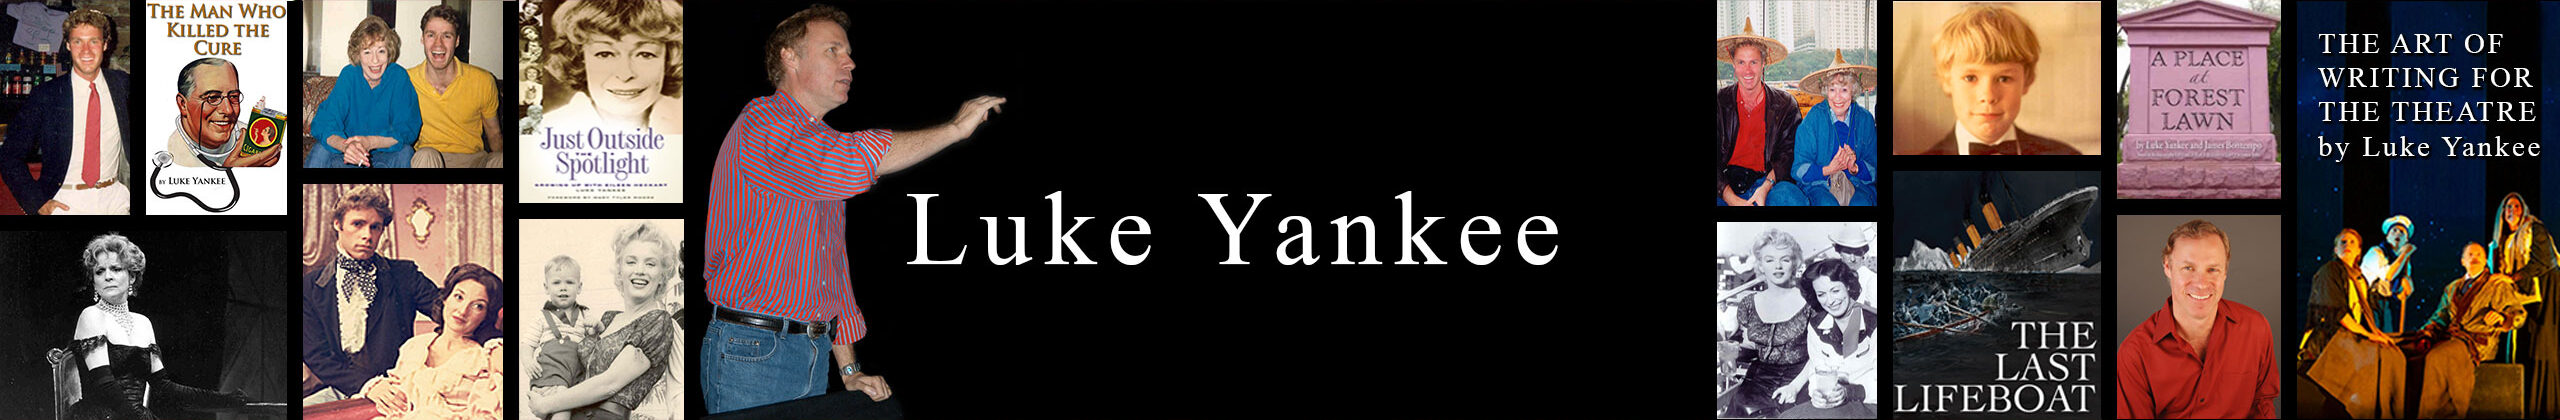 Luke Yankee